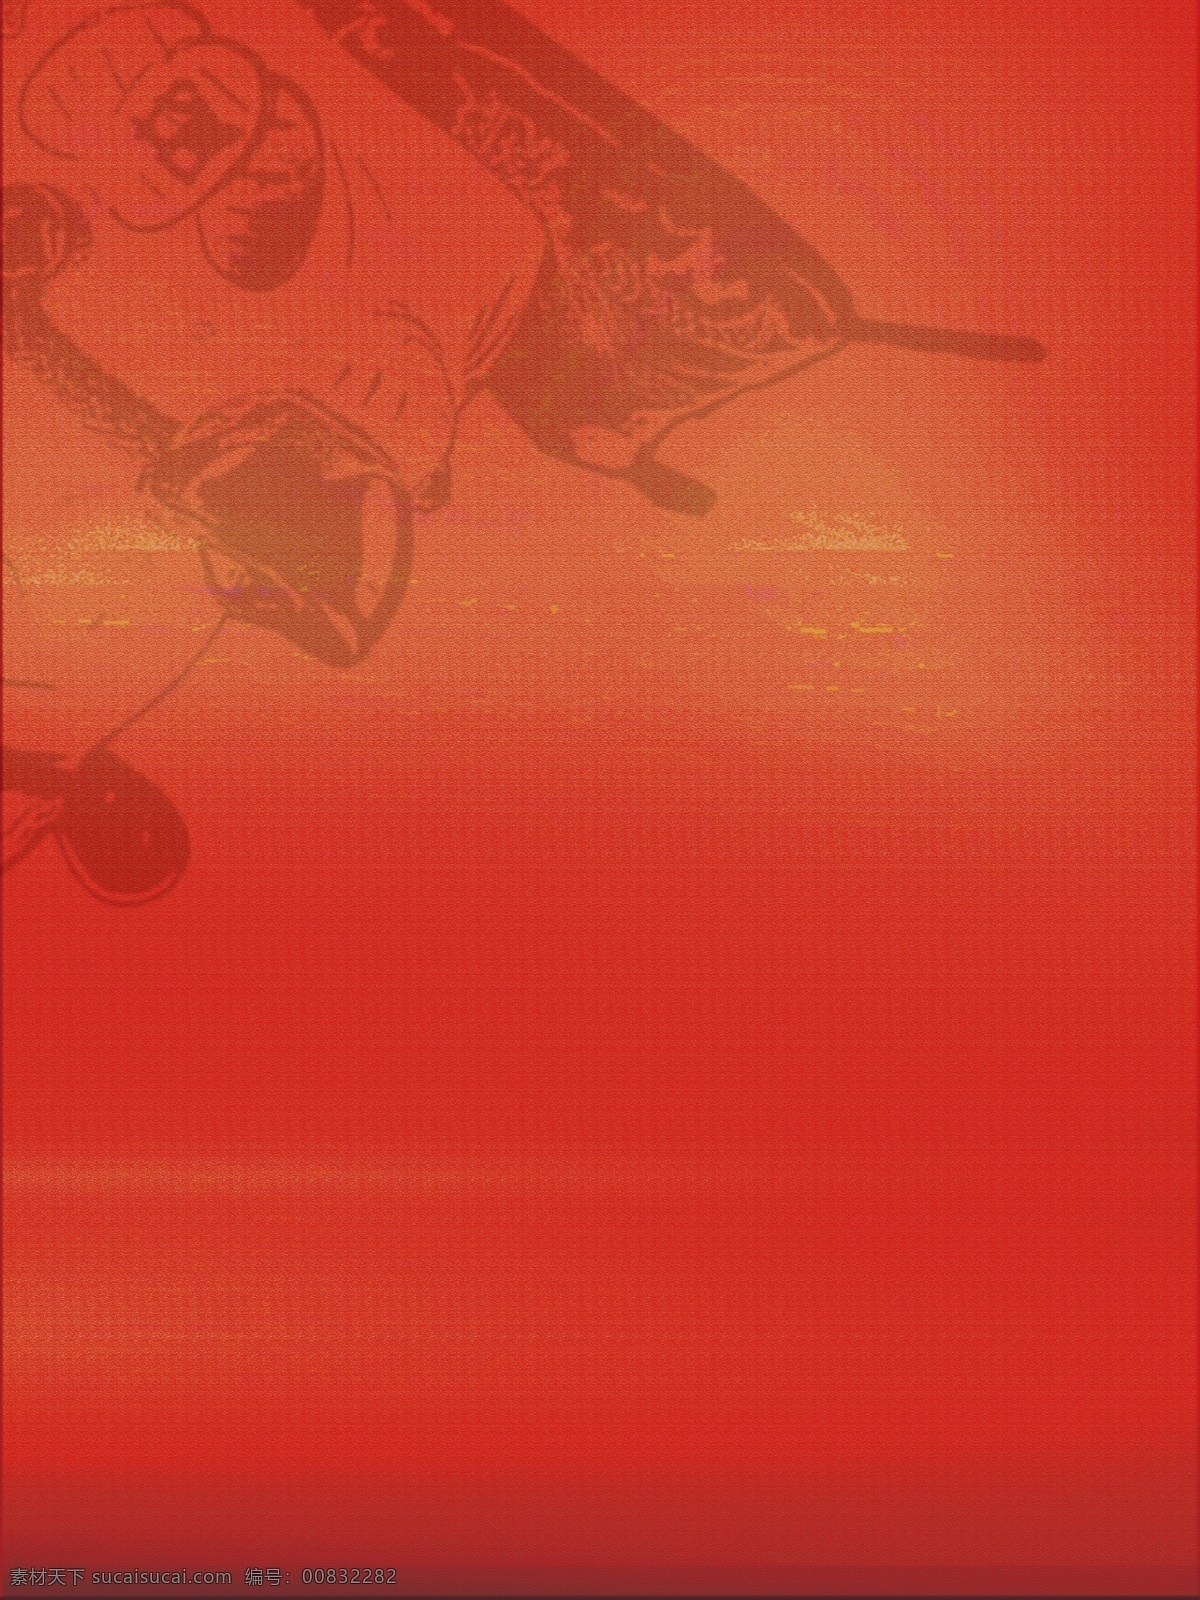 红色 招 财 猫 日本 文化 宣传 背景 红色背景 招财猫 日本文化 卡通背景 插画背景 通用背景